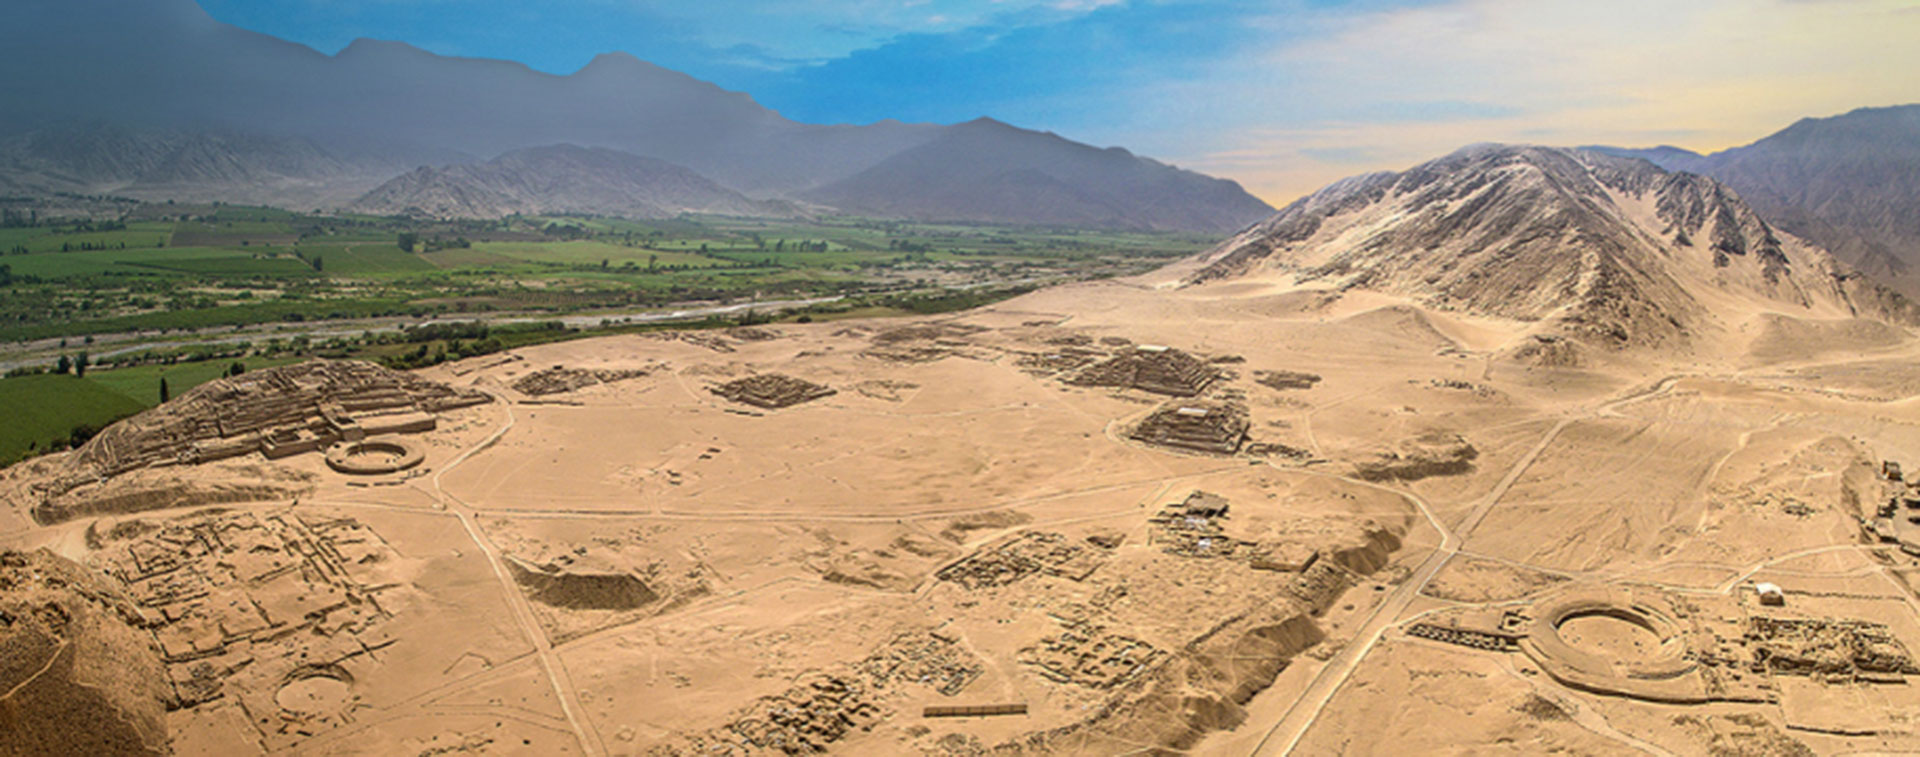 La Ciudad Sagrada de Caral-Supe se ubica en la provincia de Barranca, en la Región Lima de Perú